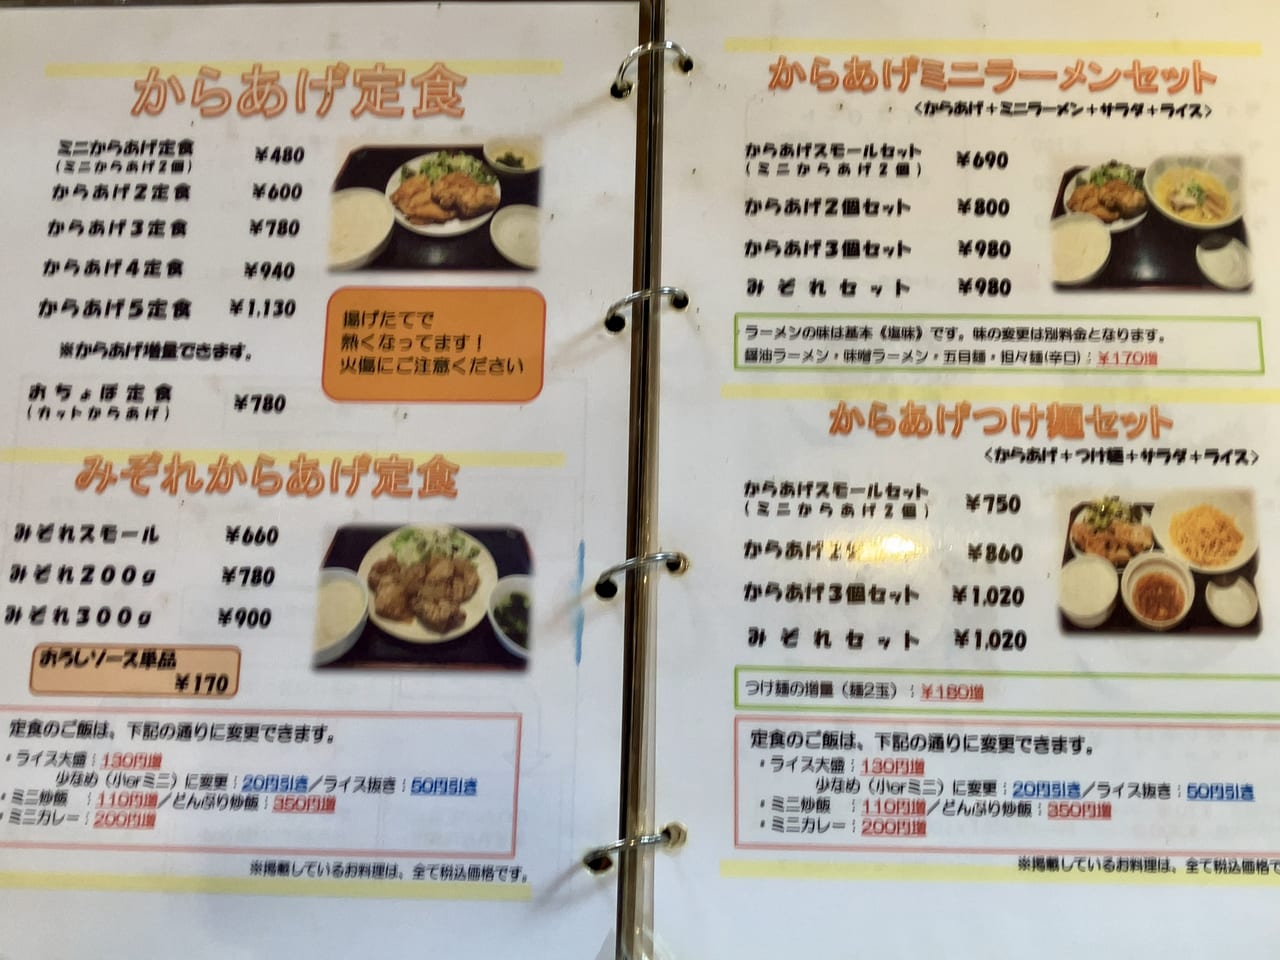 ド迫力のから揚げが食べられるとウワサの「中華食堂サウスヴィラ」に行ってみた。